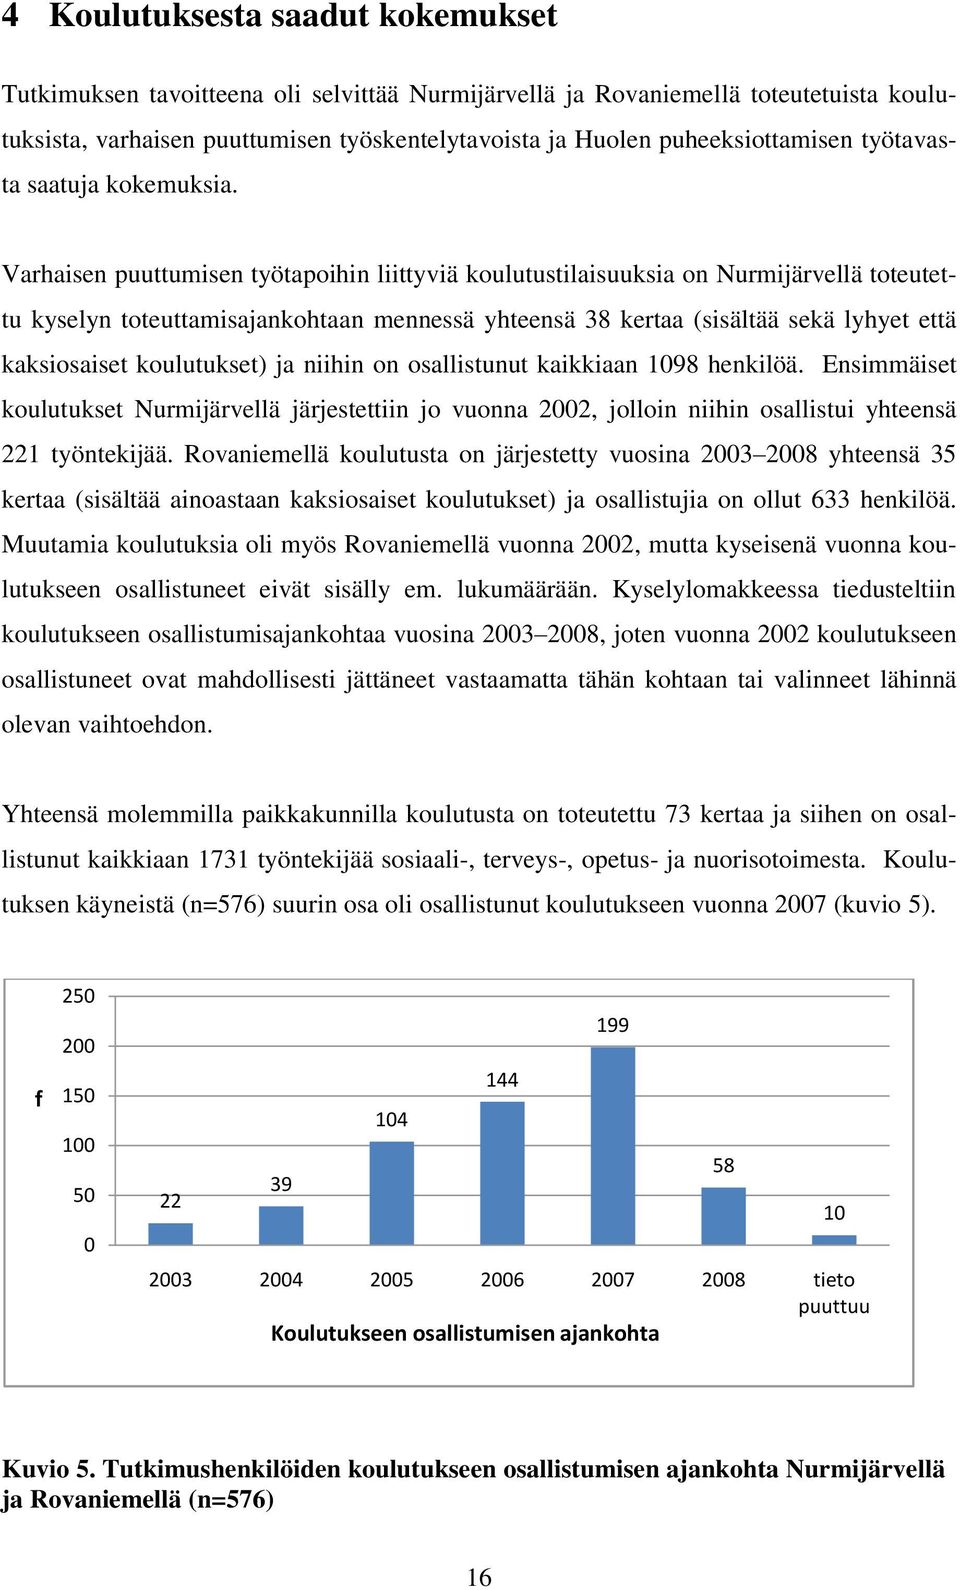 Varhaisen puuttumisen työtapoihin liittyviä koulutustilaisuuksia on Nurmijärvellä toteutettu kyselyn toteuttamisajankohtaan mennessä yhteensä 38 kertaa (sisältää sekä lyhyet että kaksiosaiset